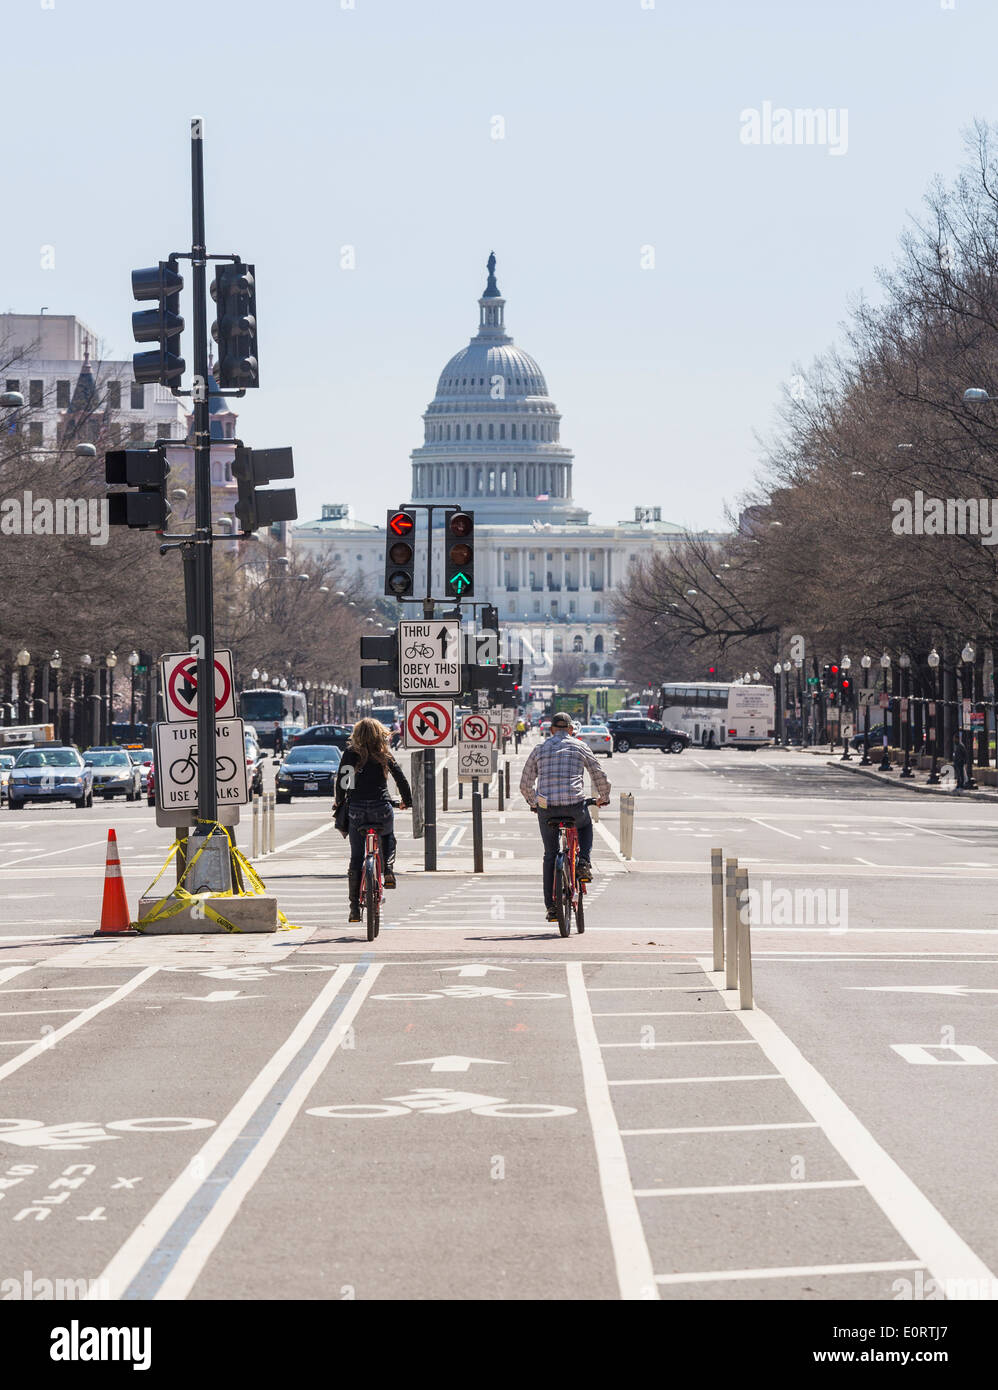 Washington DC, USA - Cycliste cyclistes à vélo le long de Pennsylvania Avenue près du Capitole Banque D'Images